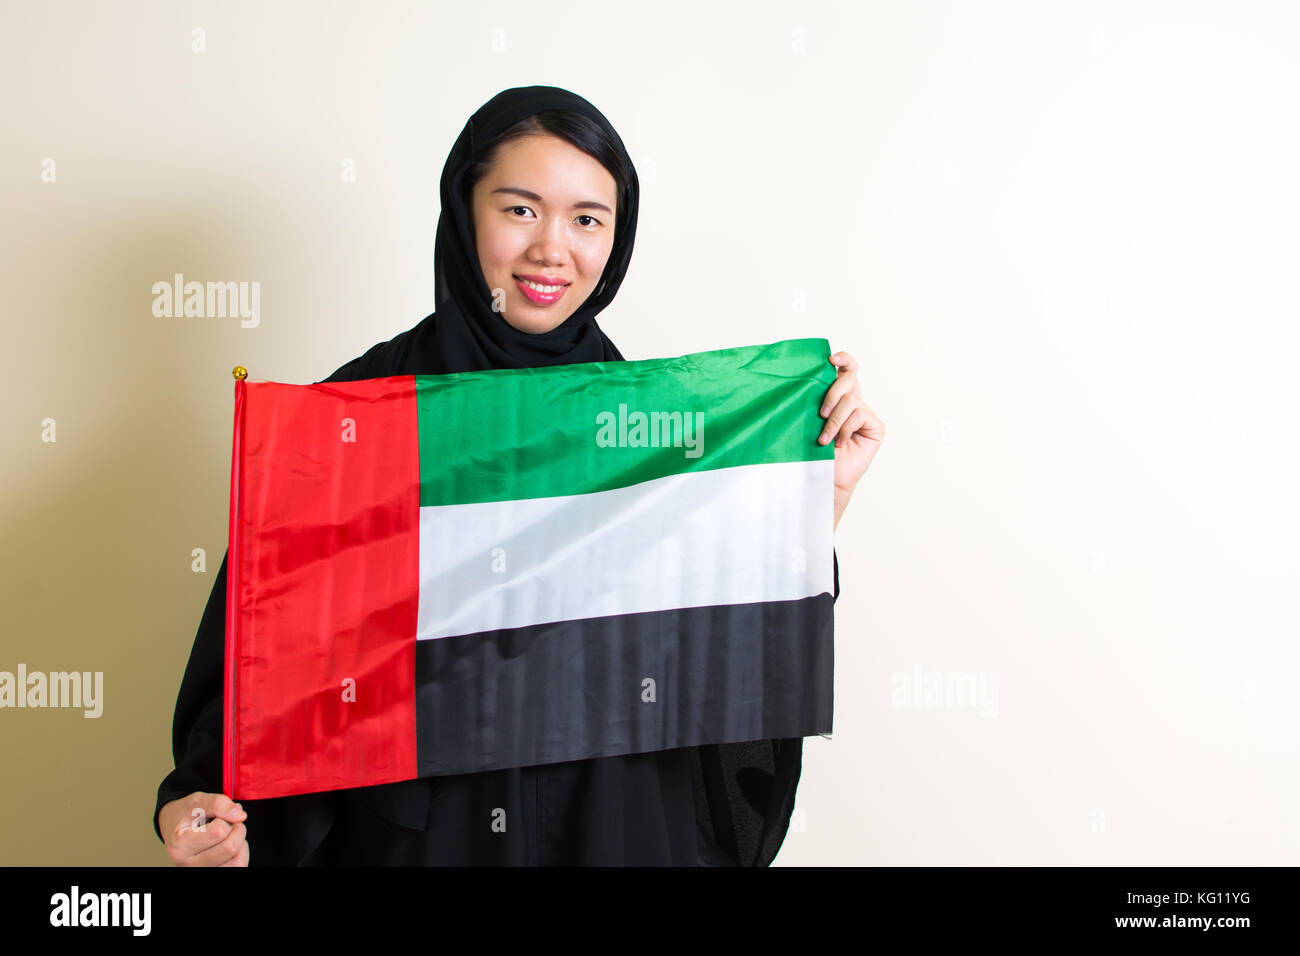 Mujer musulmana, sosteniendo la bandera de los emiratos árabes unidos Foto de stock